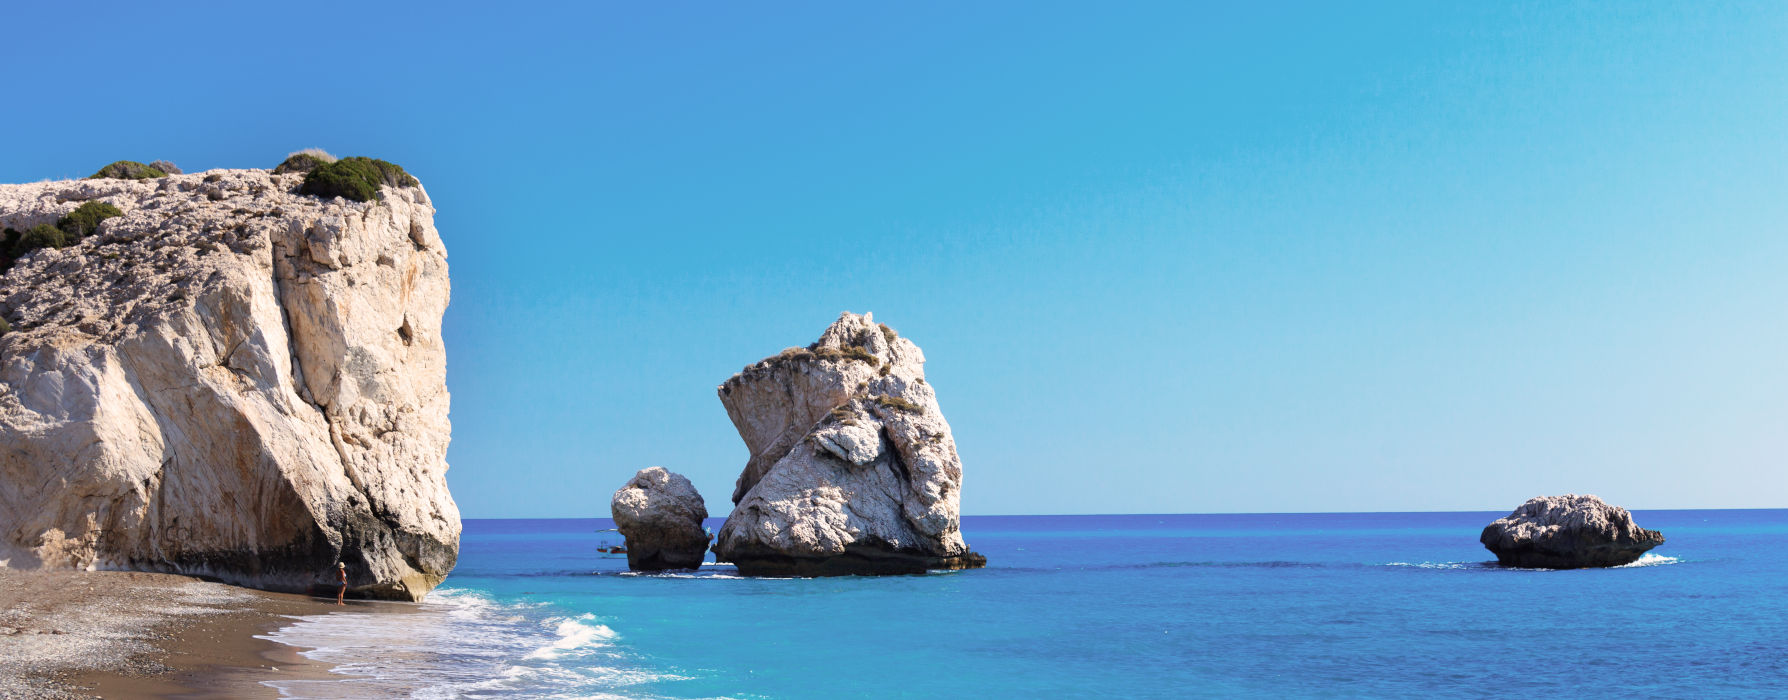 All our Cyprus<br class="hidden-md hidden-lg" /> Beach Holidays